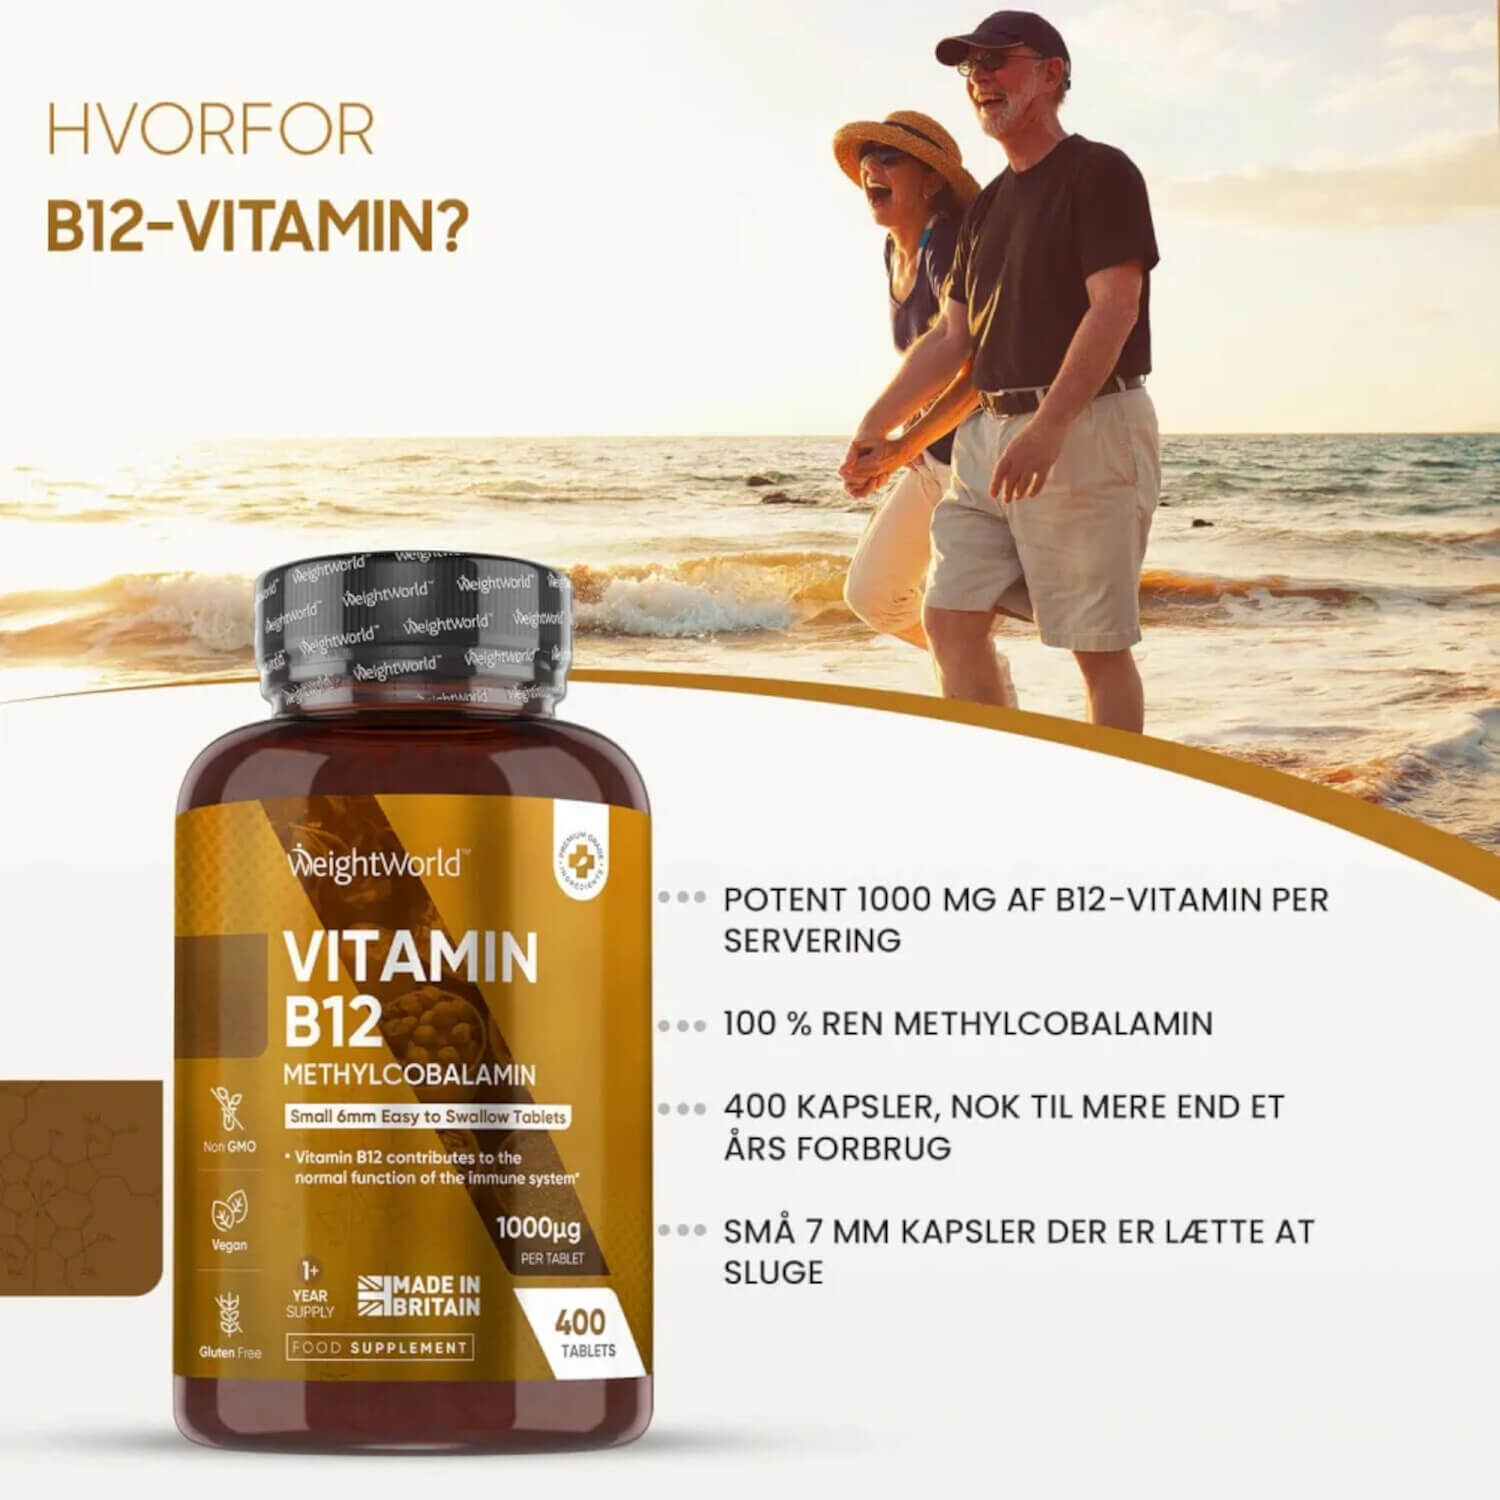 B12-vitamin: Nøgleinformation og fordele